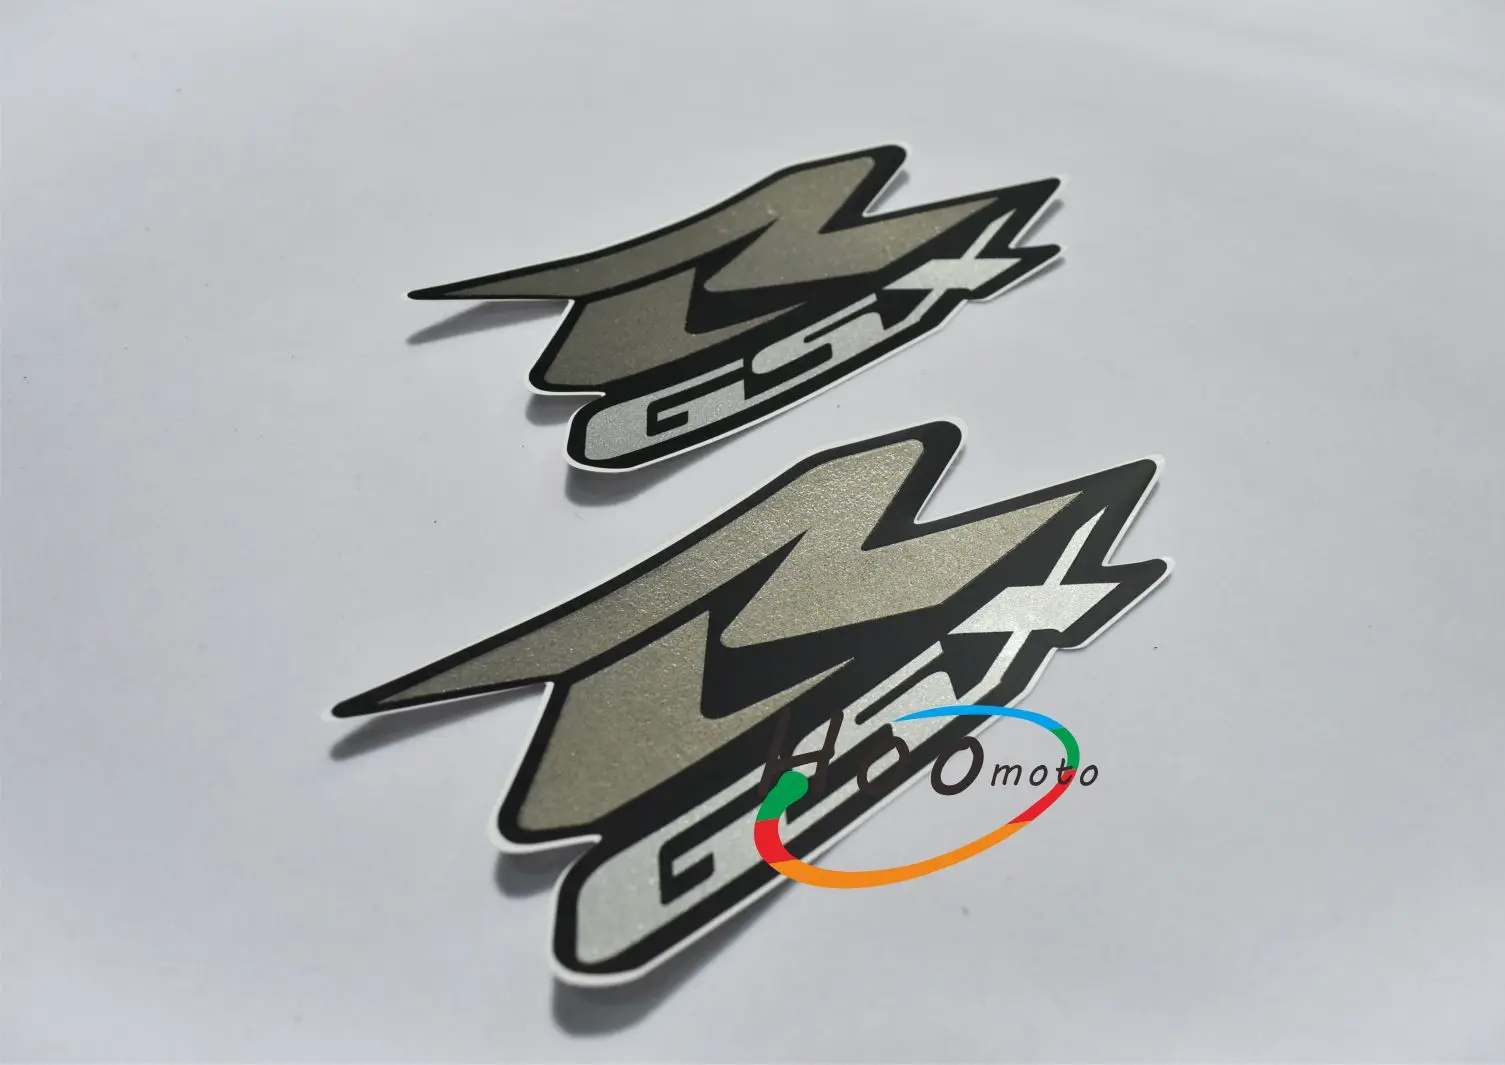 Серебряный GSXR GSX R наклейка на мотоцикл и наклейки логотип значок пара для SUZUKI GSX R 600 750 1000 K1 K3 K4 K5 K6 K7 K8 K9 K11 H1